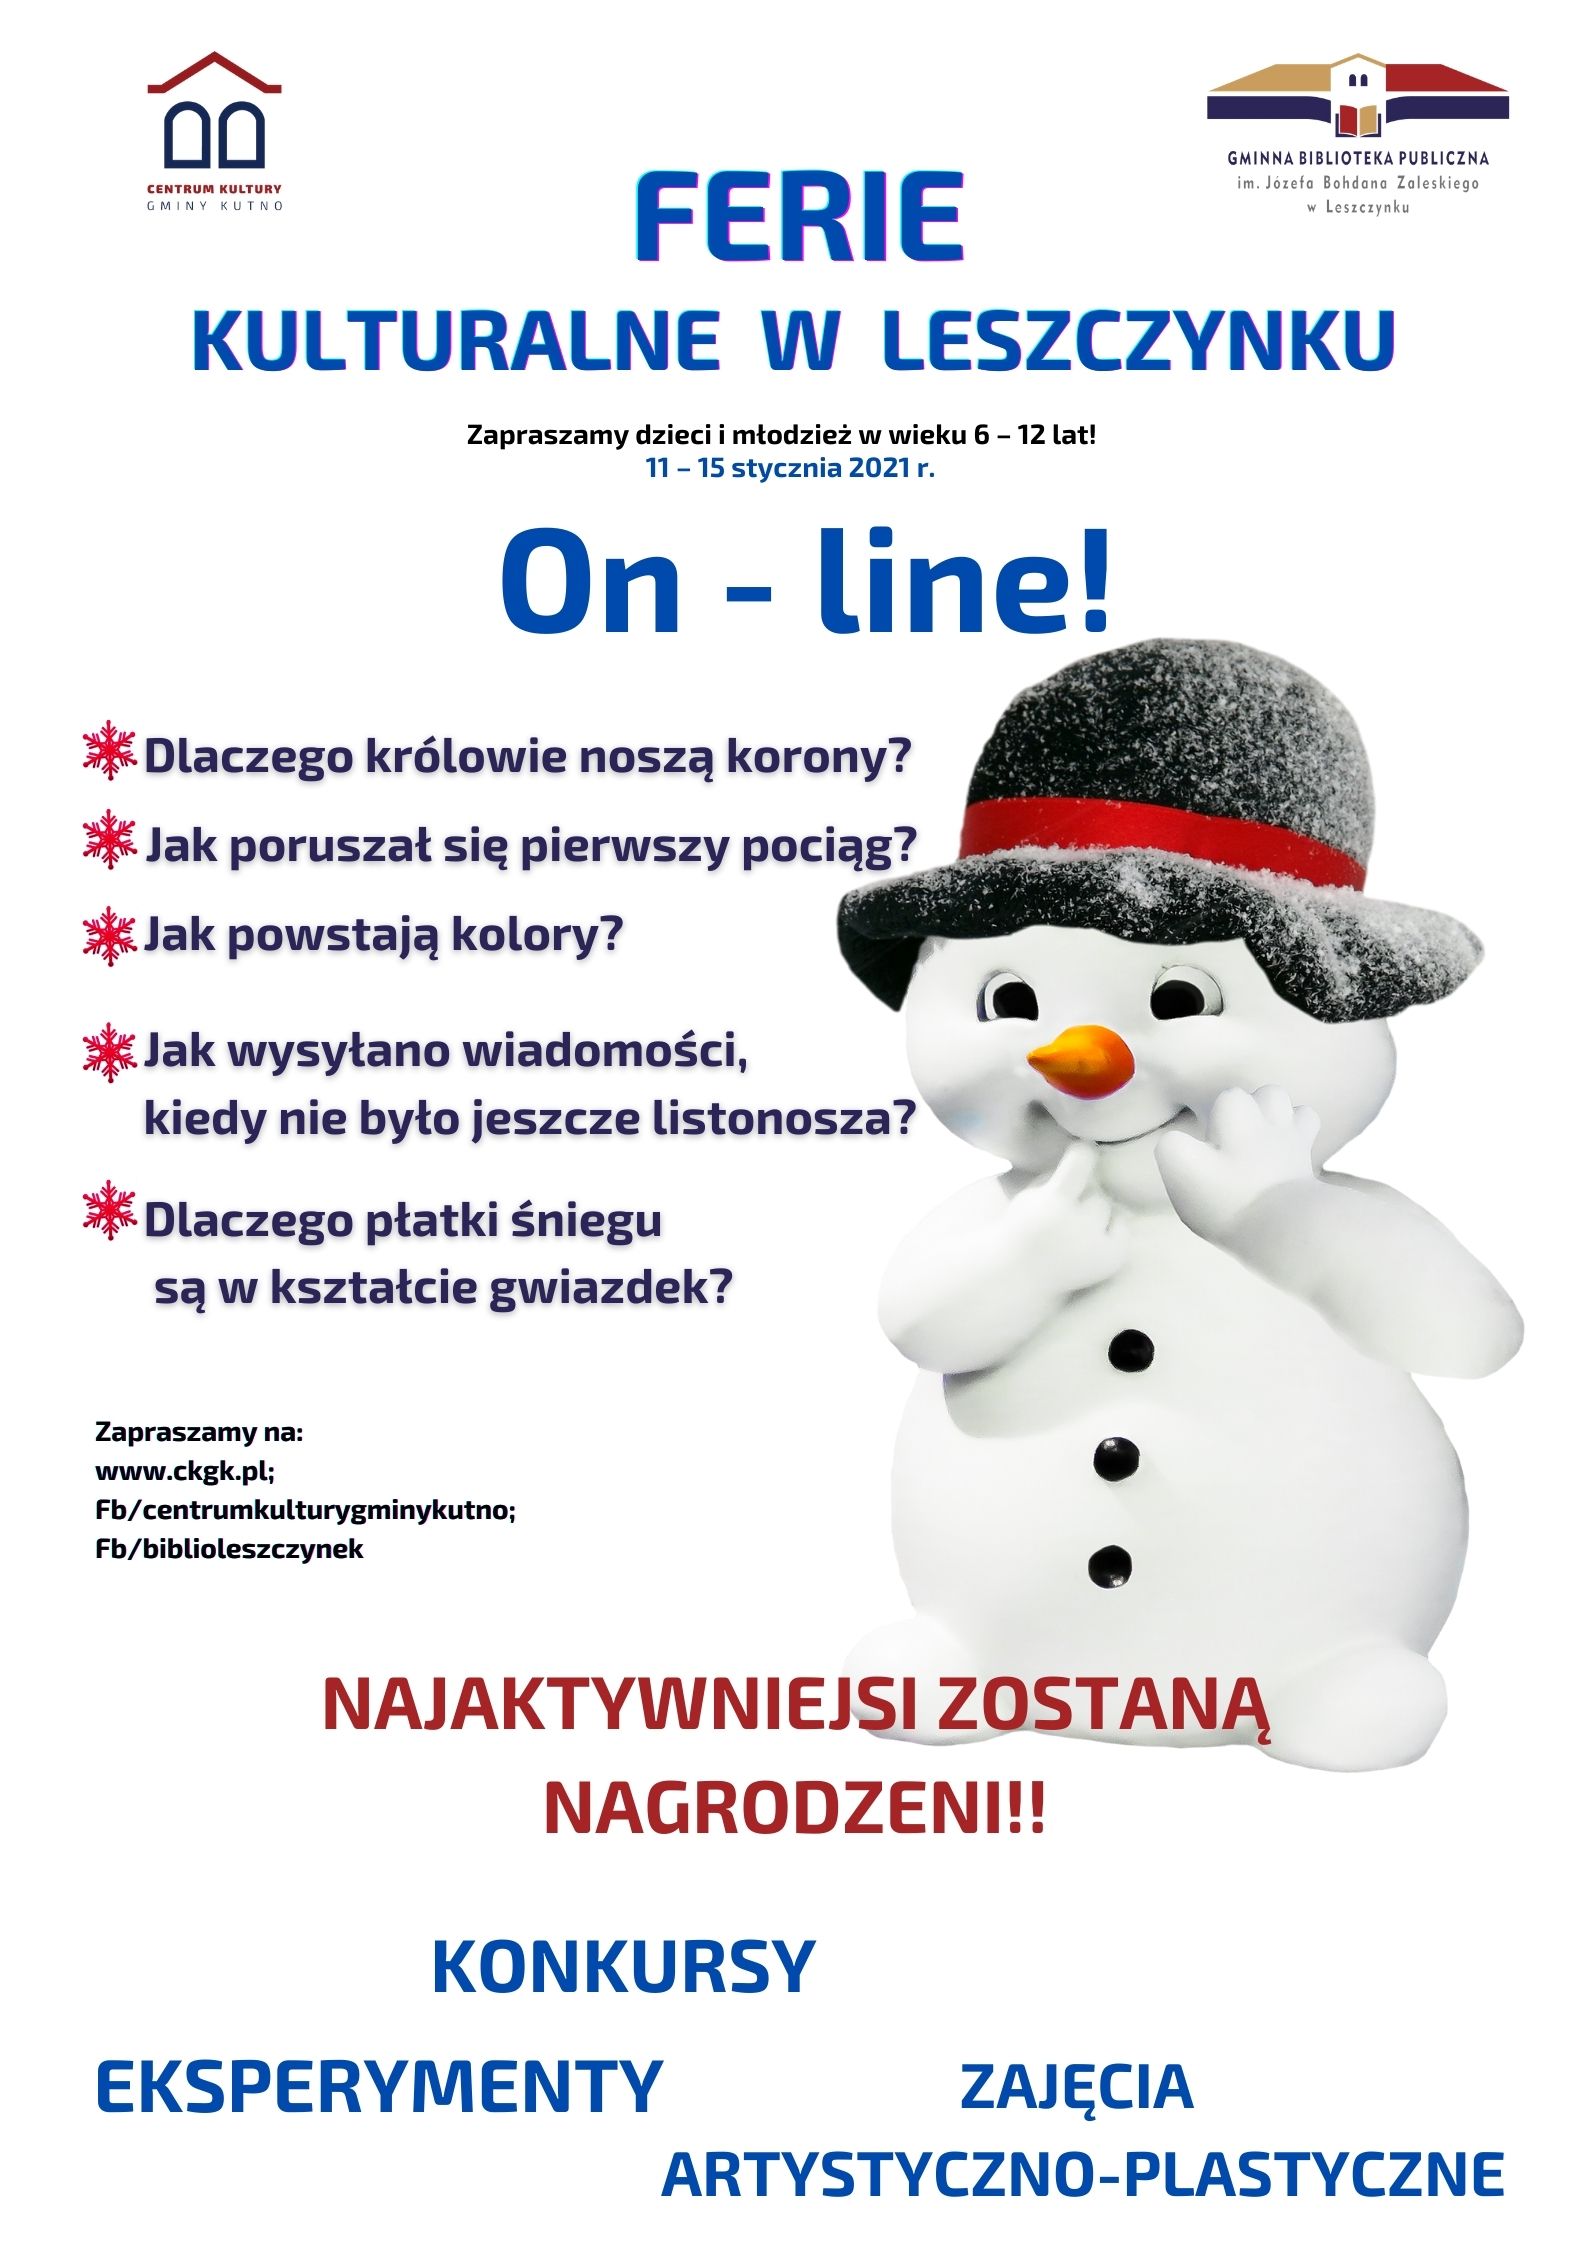 Kulturalne ferie w Leszczynku On line